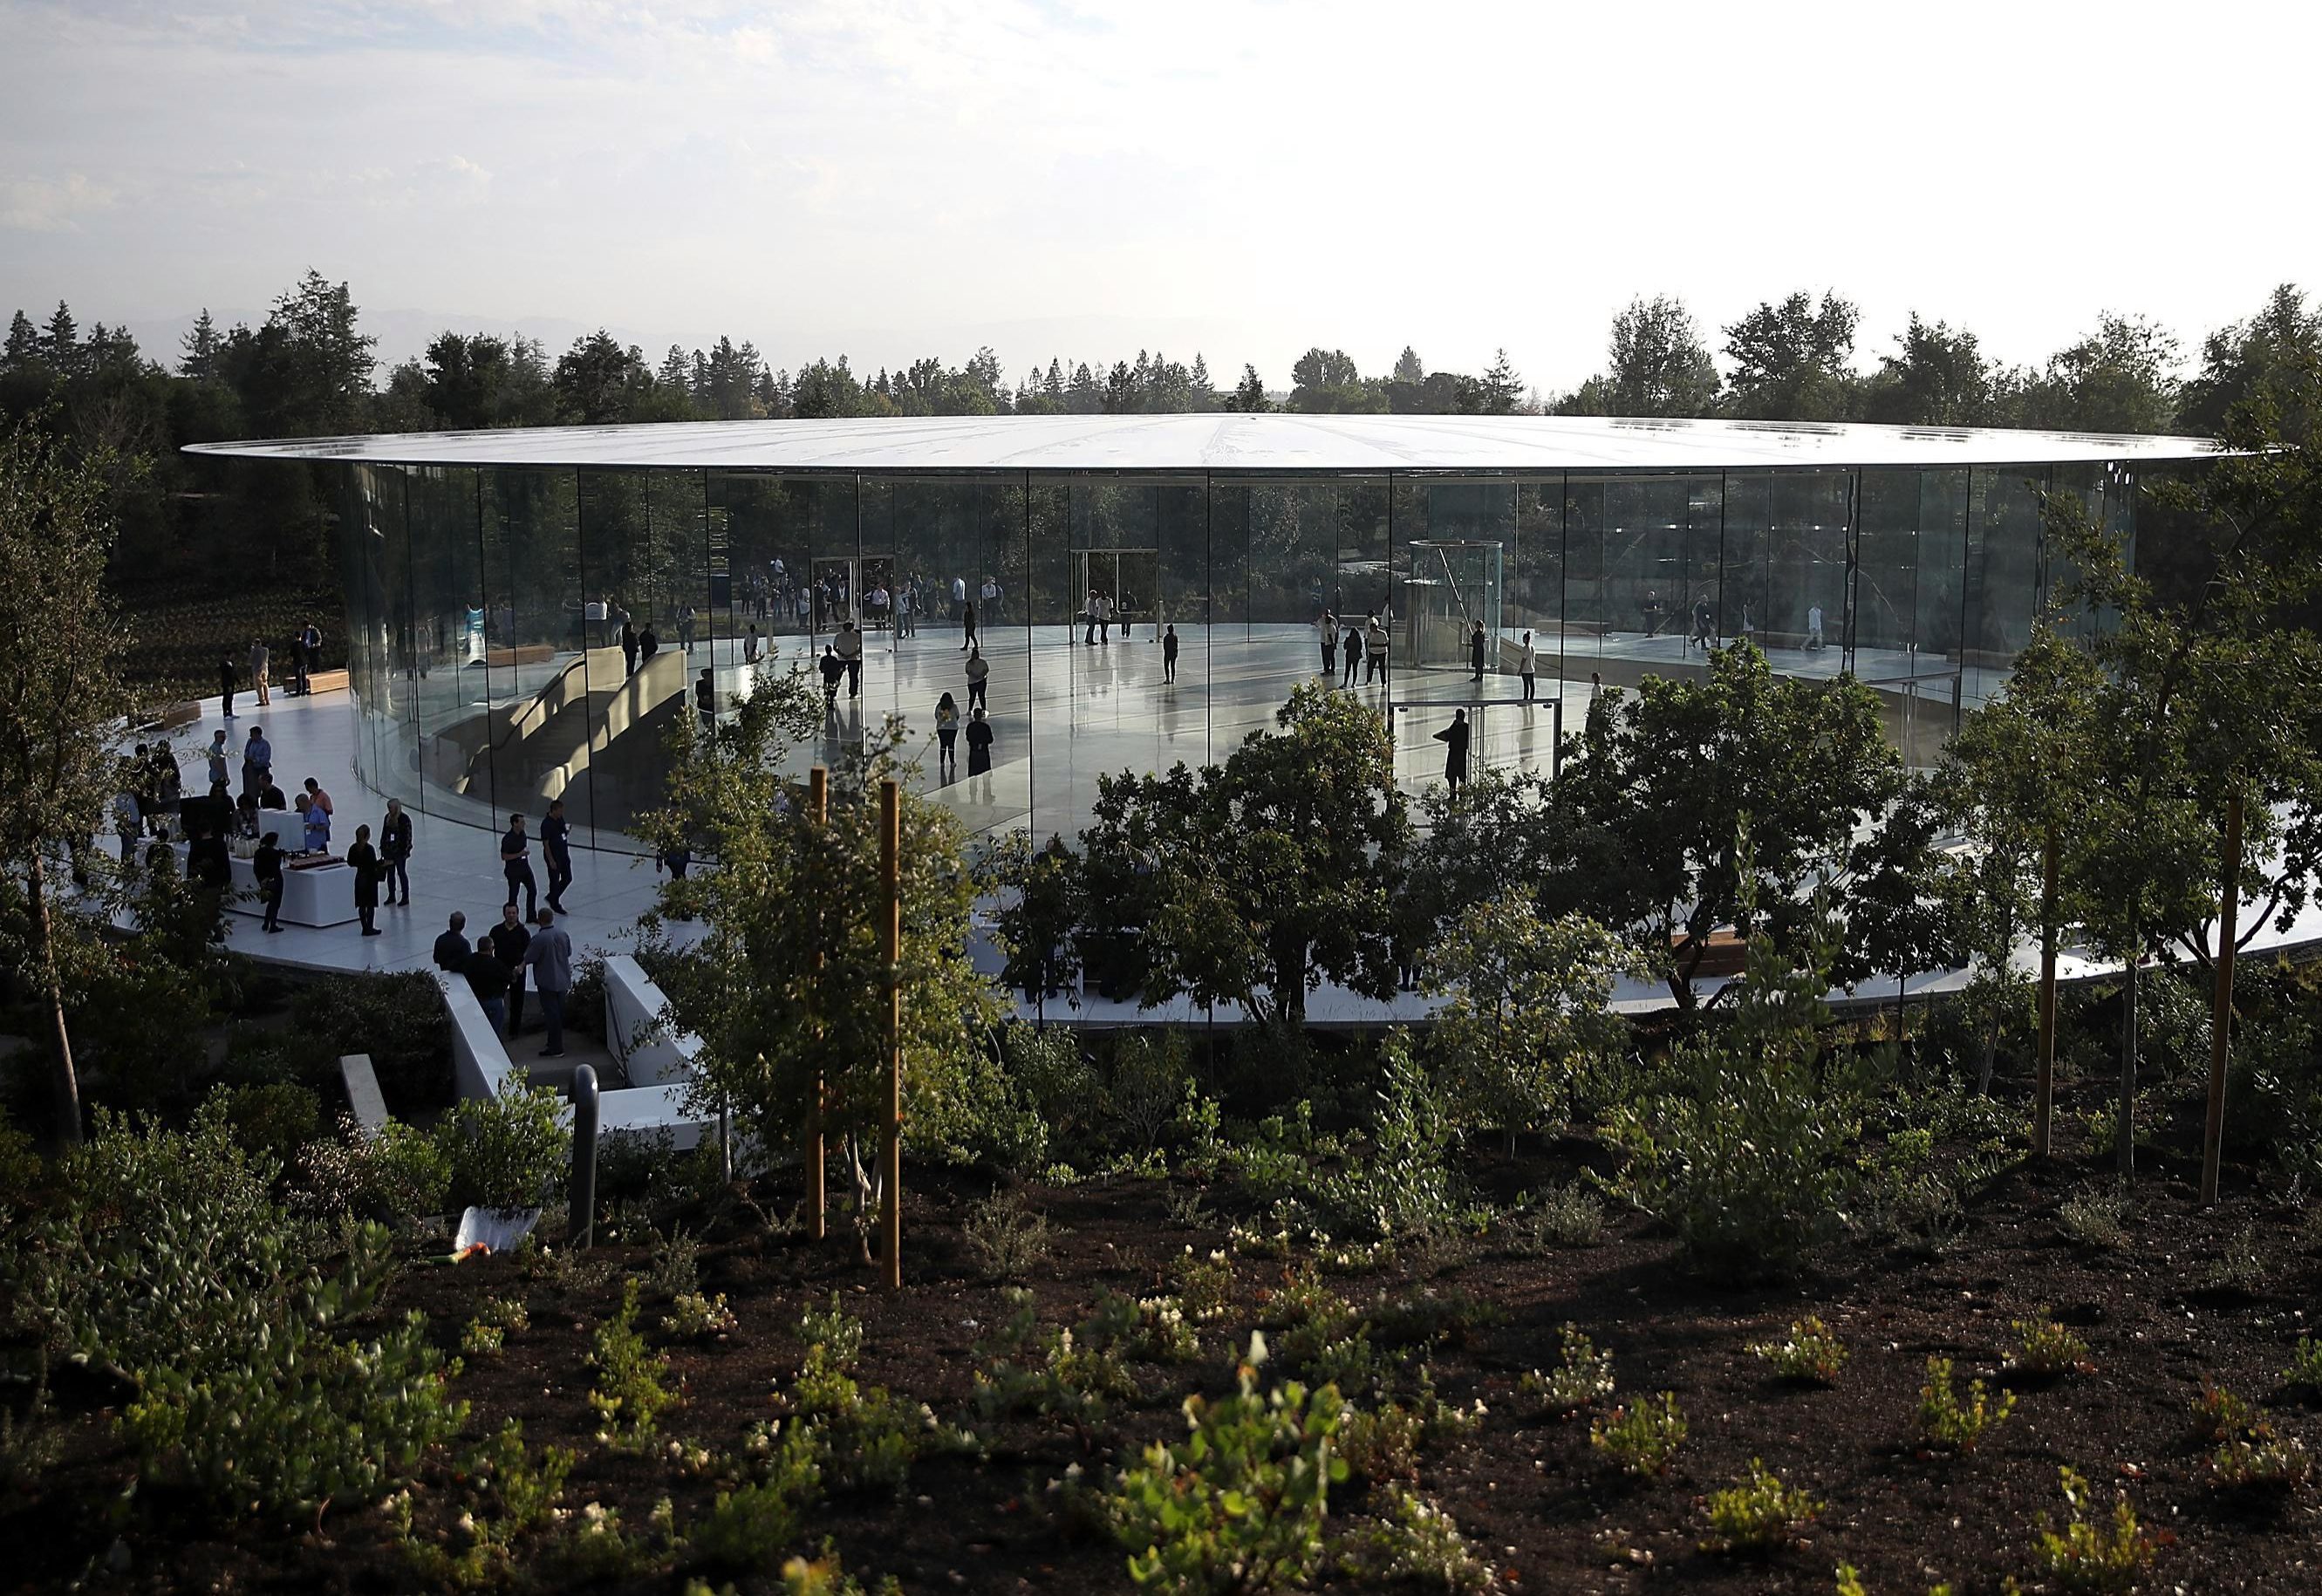                                 Upp till 80 procent av de massiva platserna slutfördes som grönområden, enligt Apple